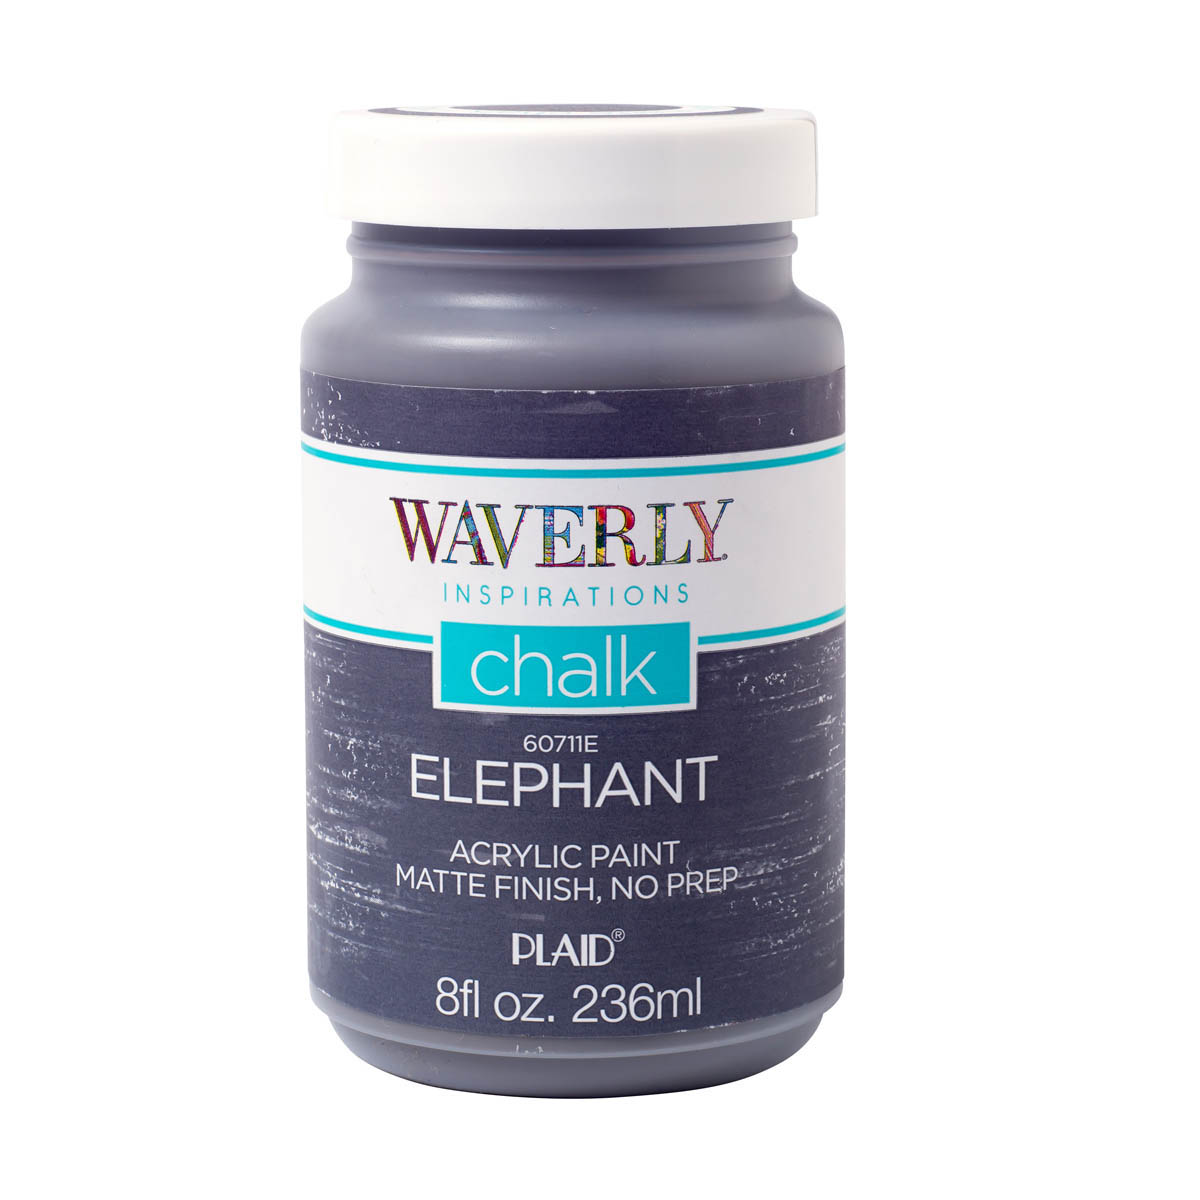 Waverly ® Inspirations Chalk Acrylic Paint - Elephant, 8 oz. - 60711E